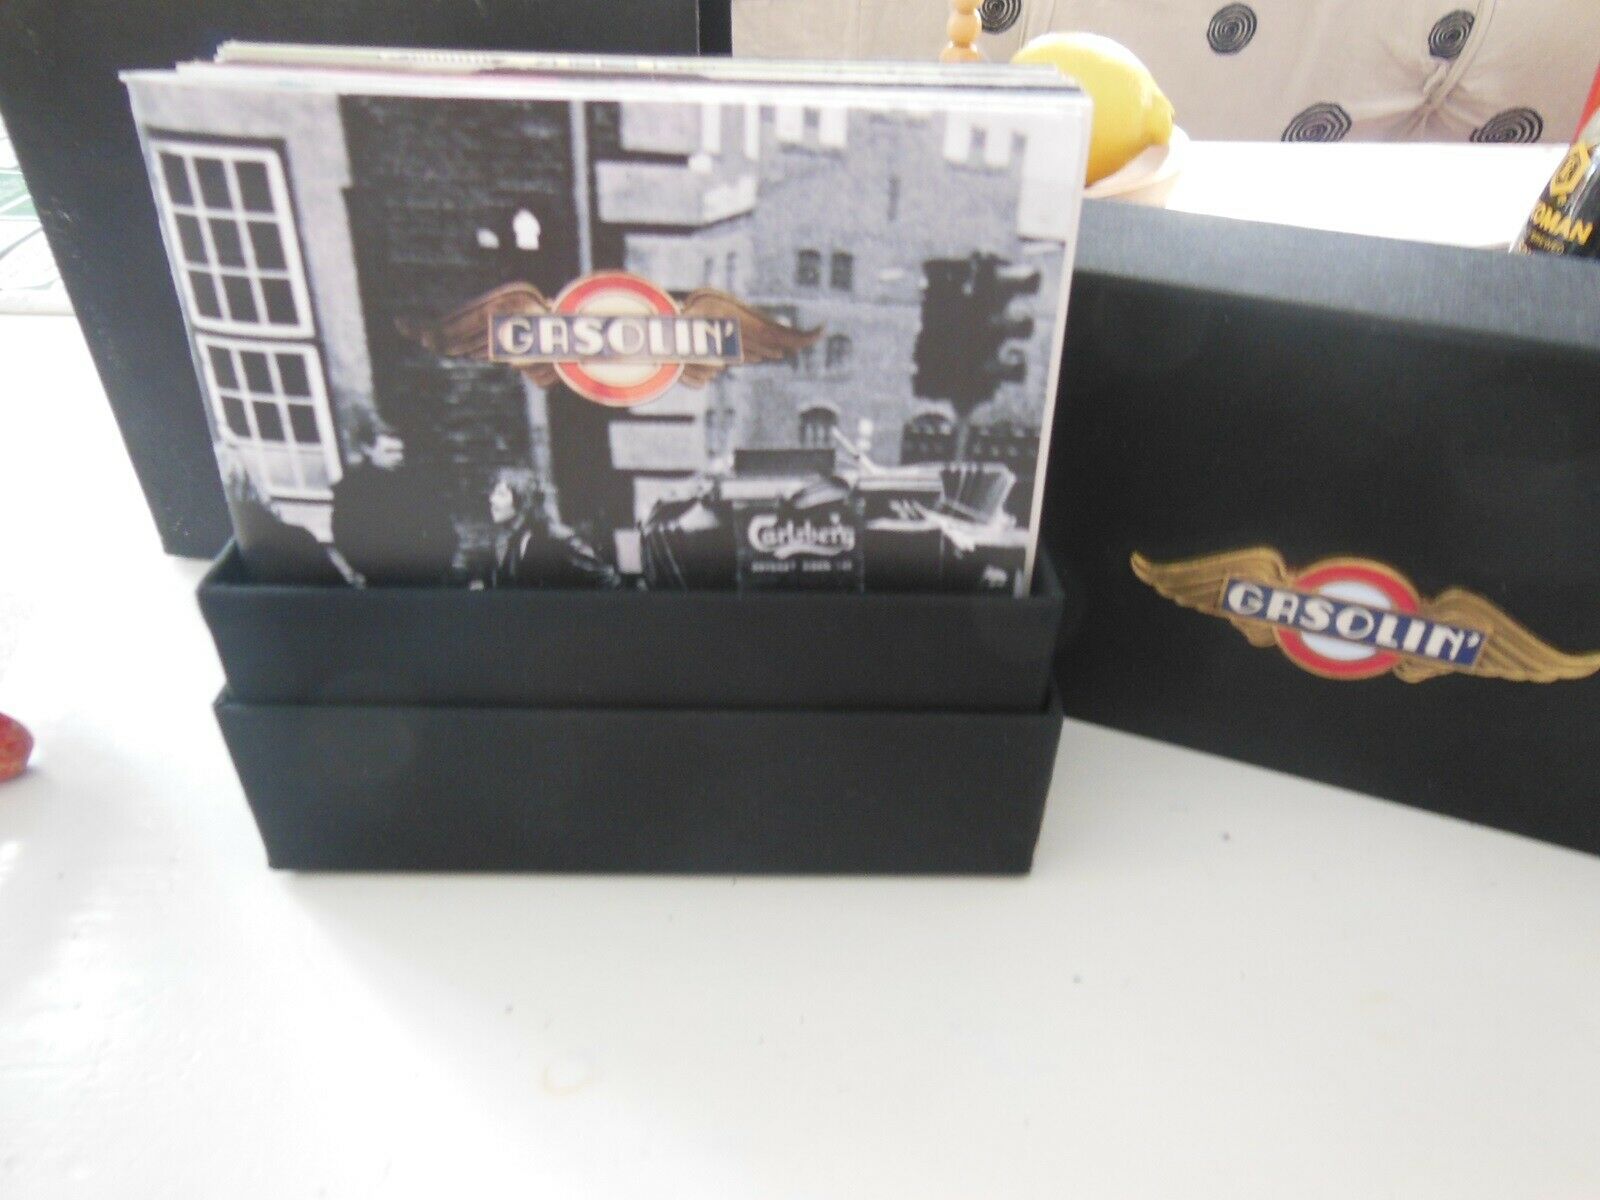 GASOLIN BLACK BOX CD: GASOLIN BLACK BOX CD, rock